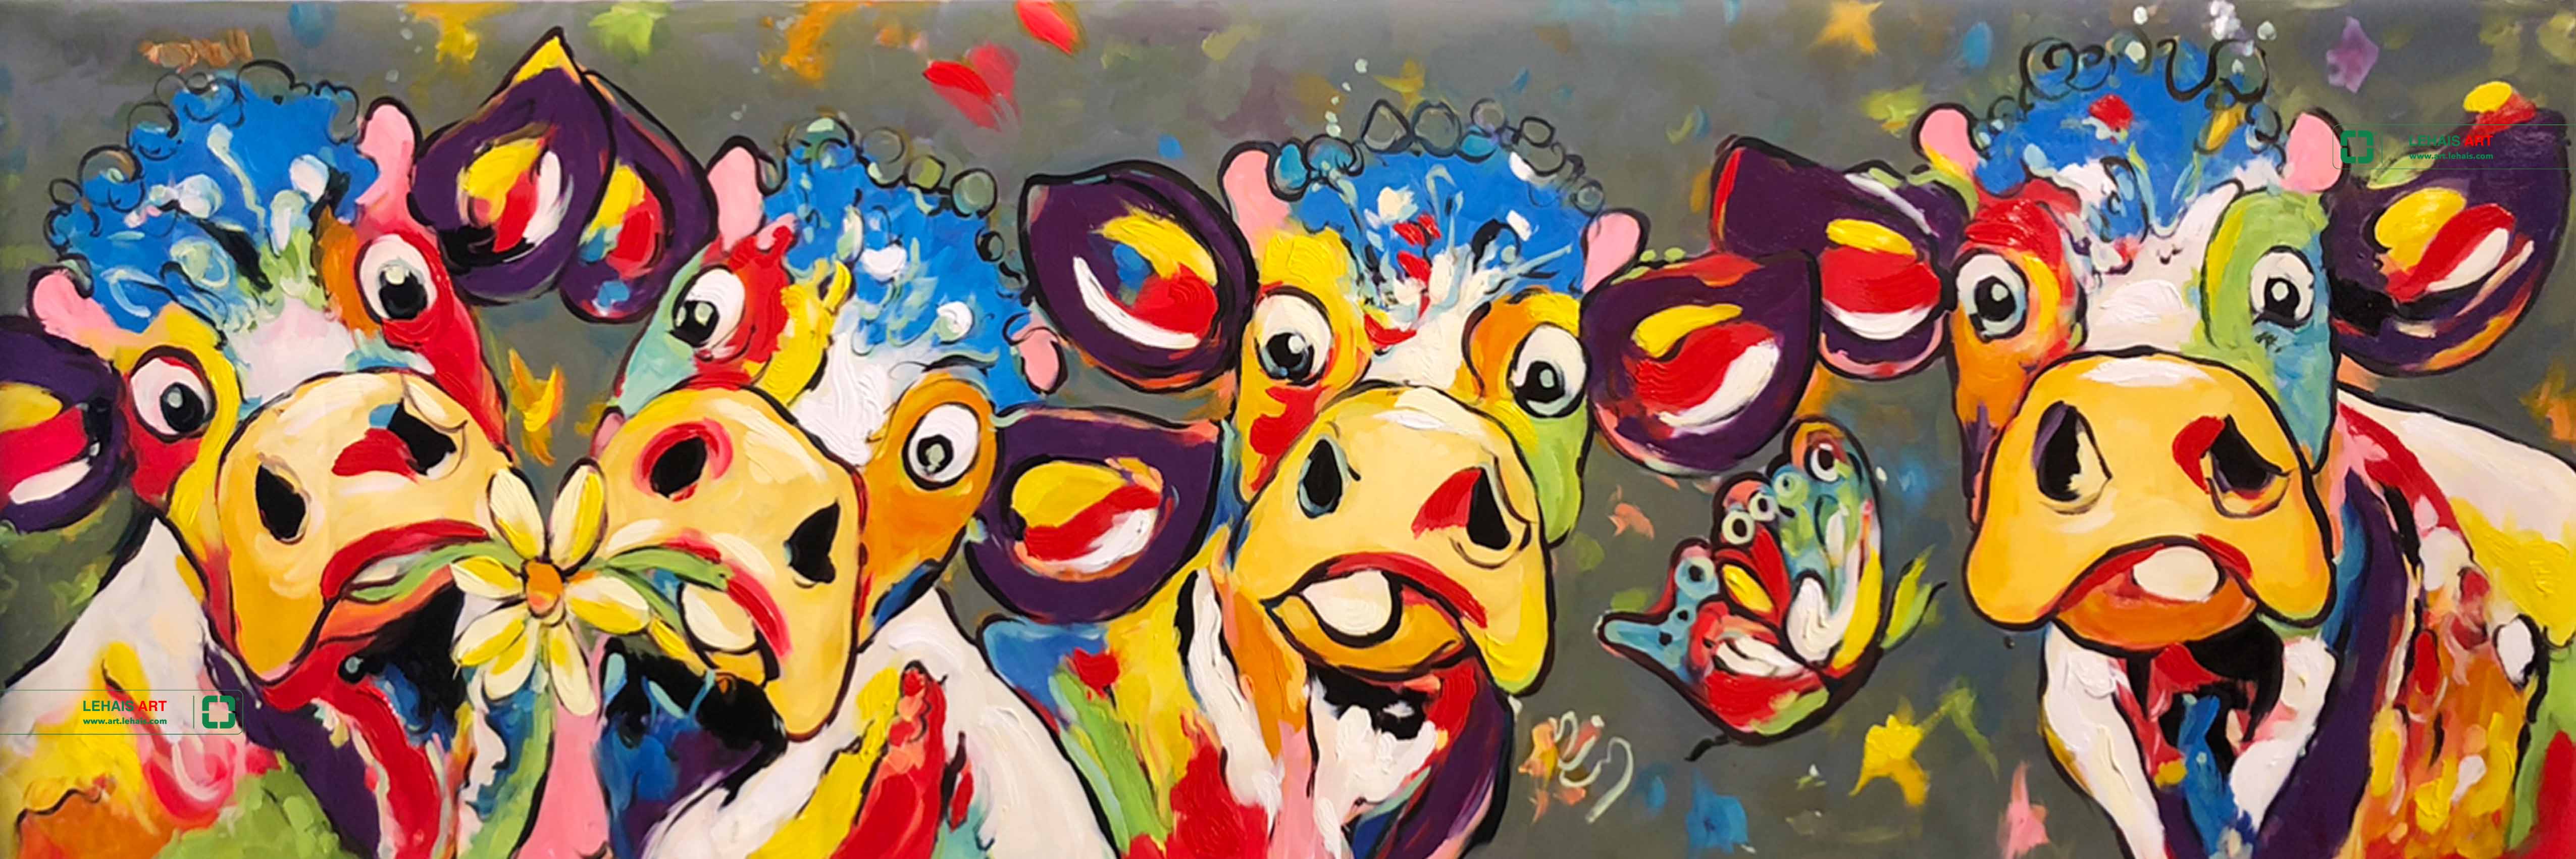 Tranh sơn dầu vẽ những con bò theo phong cách hiện đại - TSD774LHAR